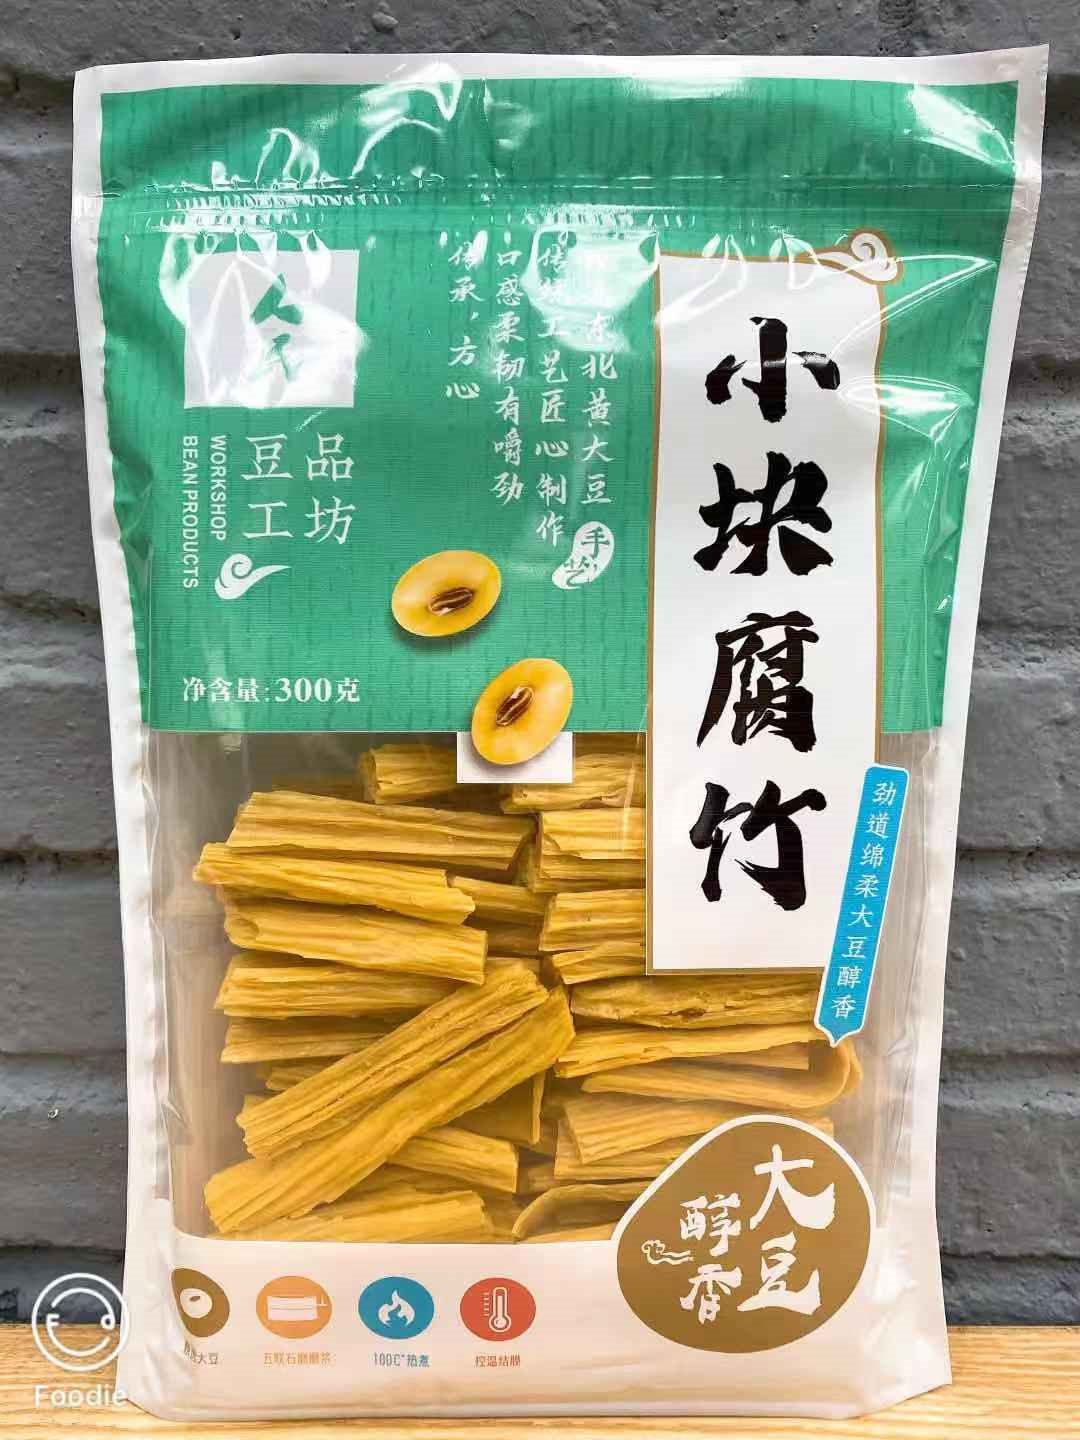 豆制品腐竹